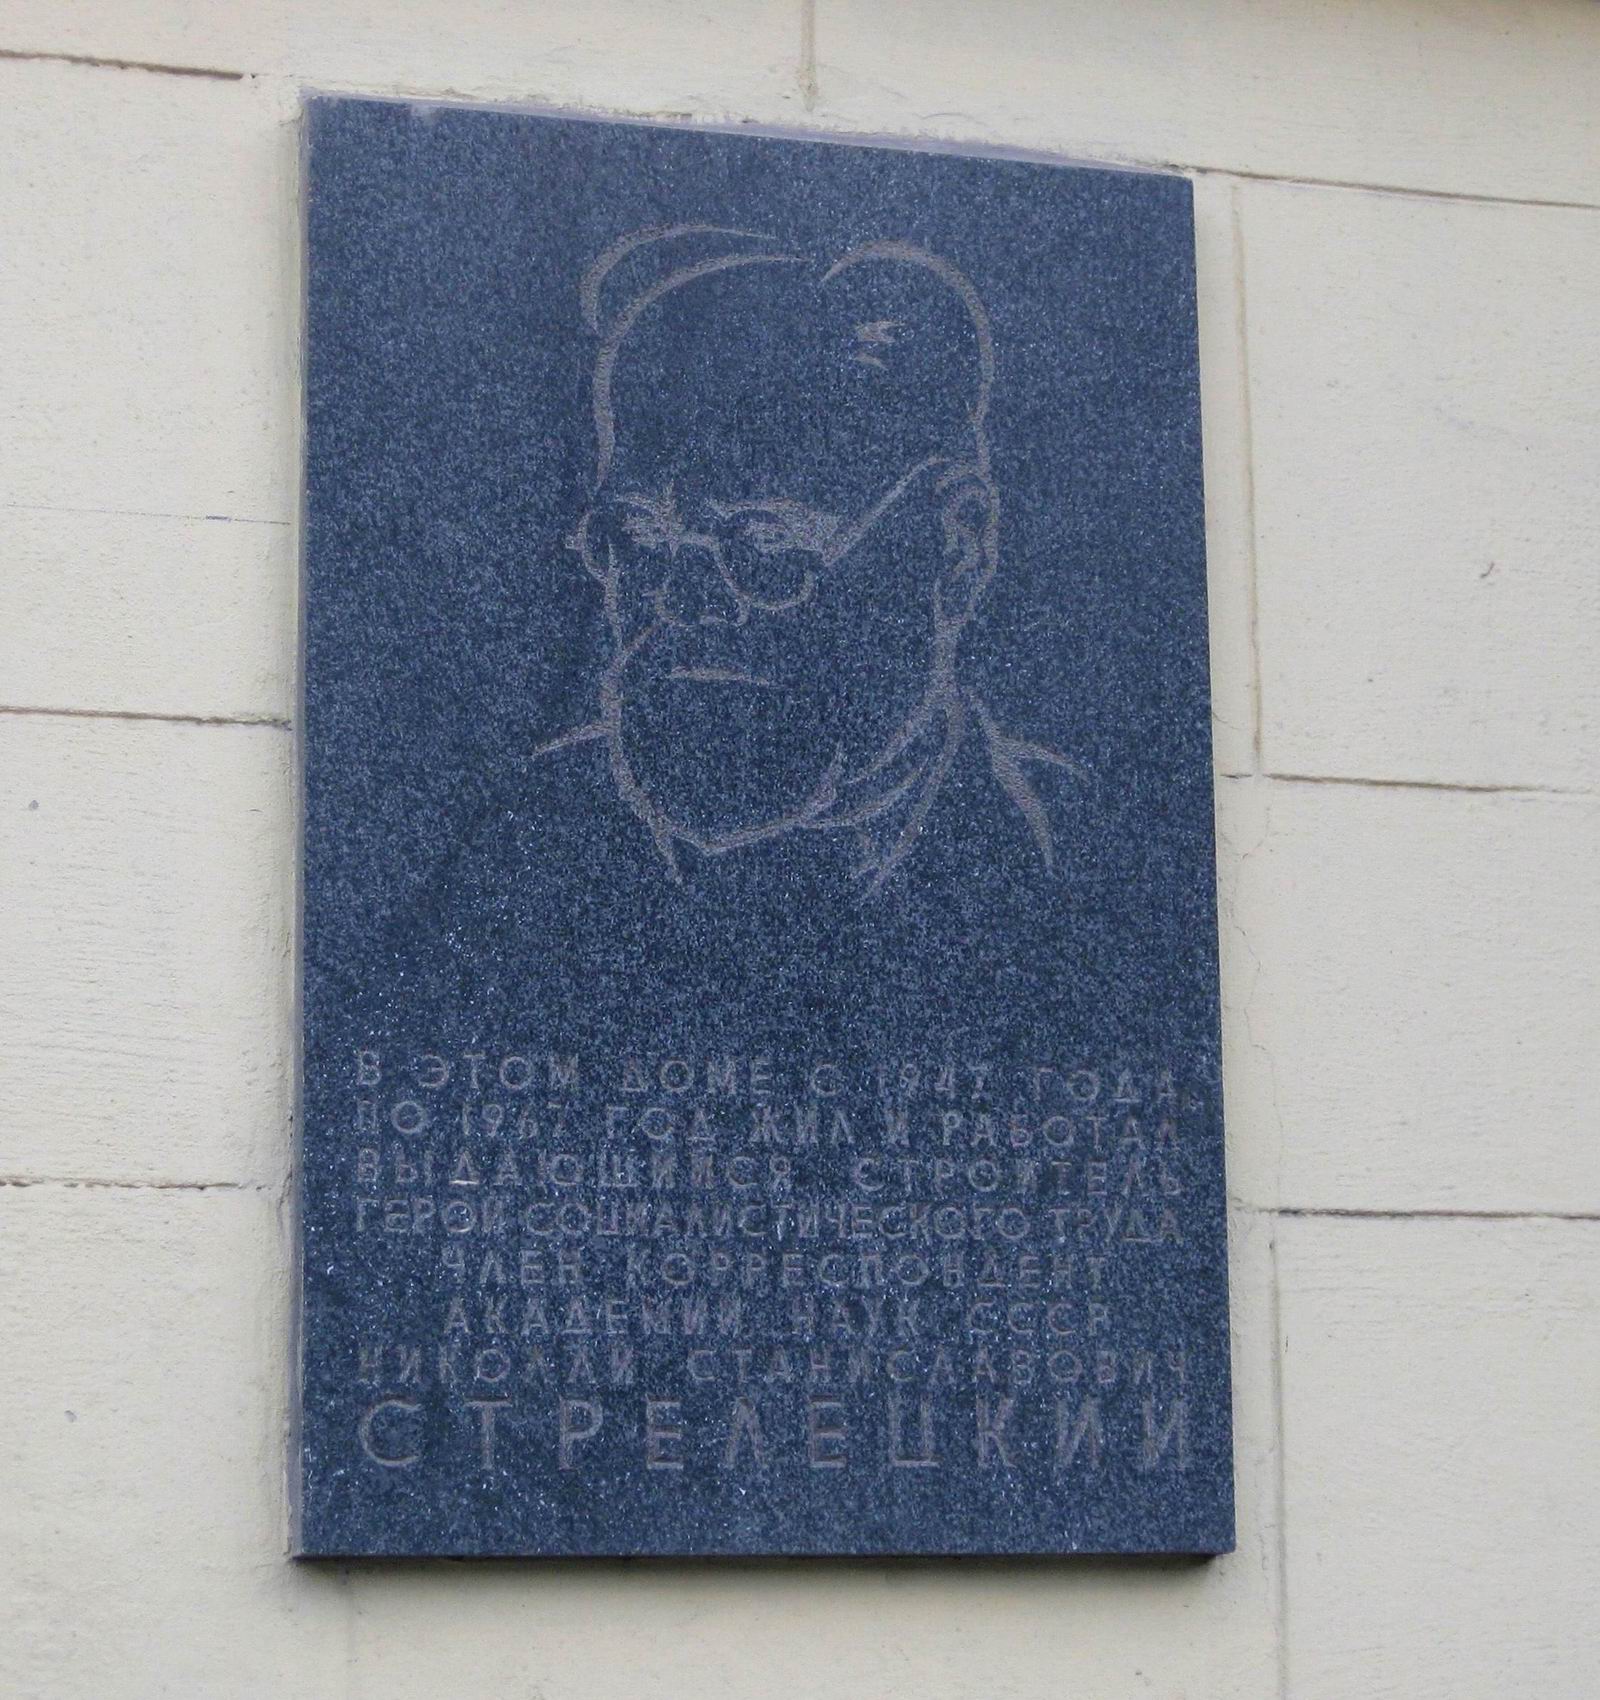 Мемориальная доска Стрелецкому Н.С. (1885-1967), ск. Т.Л.Ельницкая, арх. В.И.Симошнин, в Большом Лёвшинском переулке, дом 9, открыта в мае 1971.